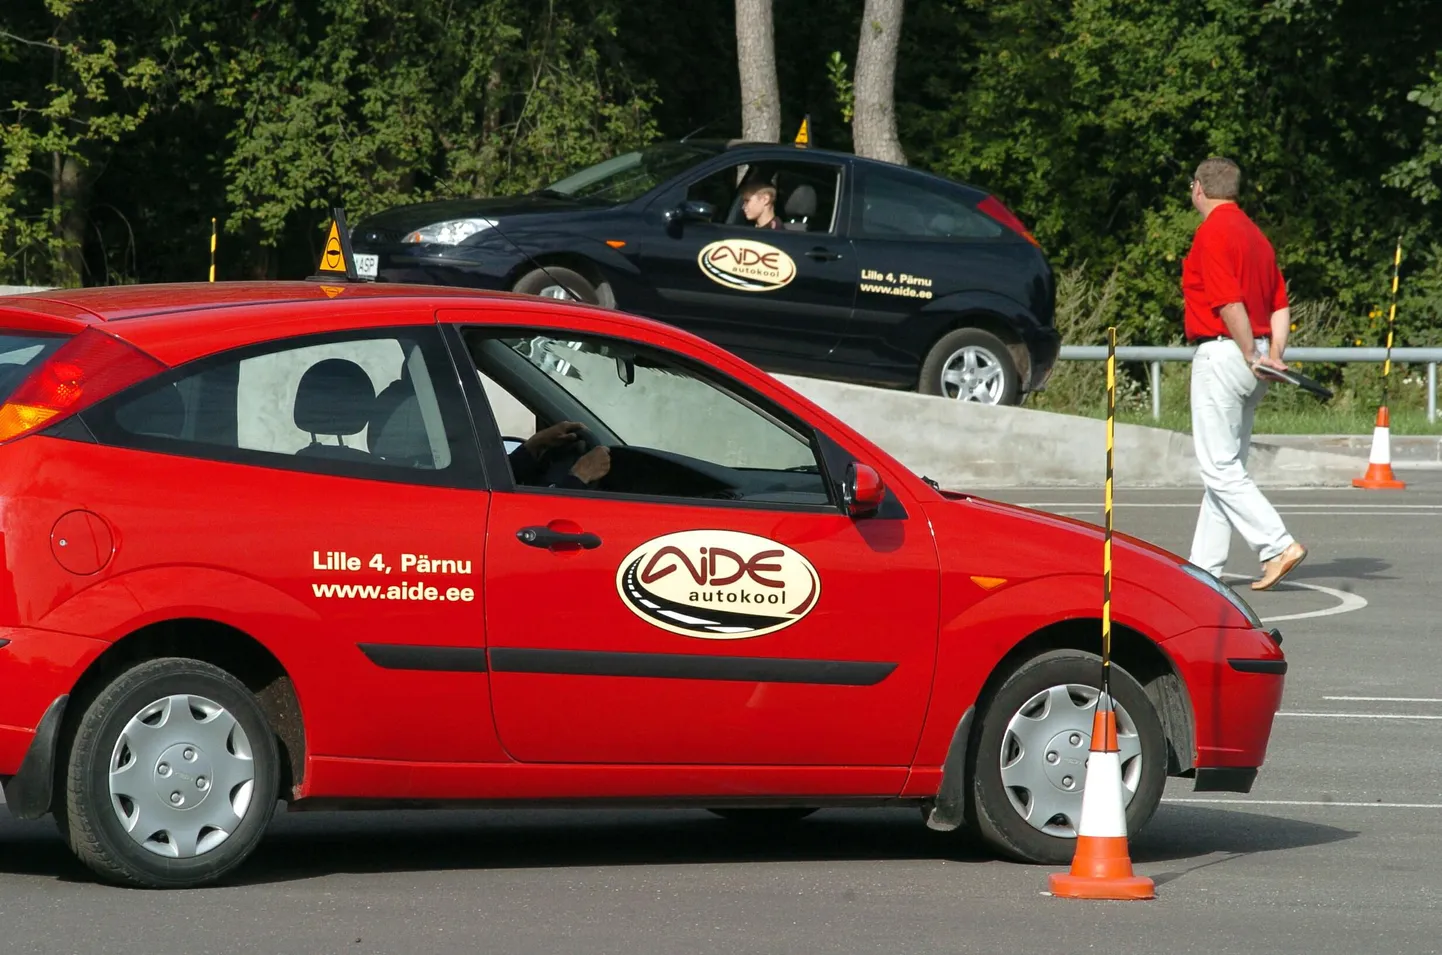 Autoregistrikeskuse Pärnu büroo soovitab seoses võimalike õigusrikkumistega libedasõidukoolituses kaaluda Aide autokoolilt koolitusloa ära võtmist.